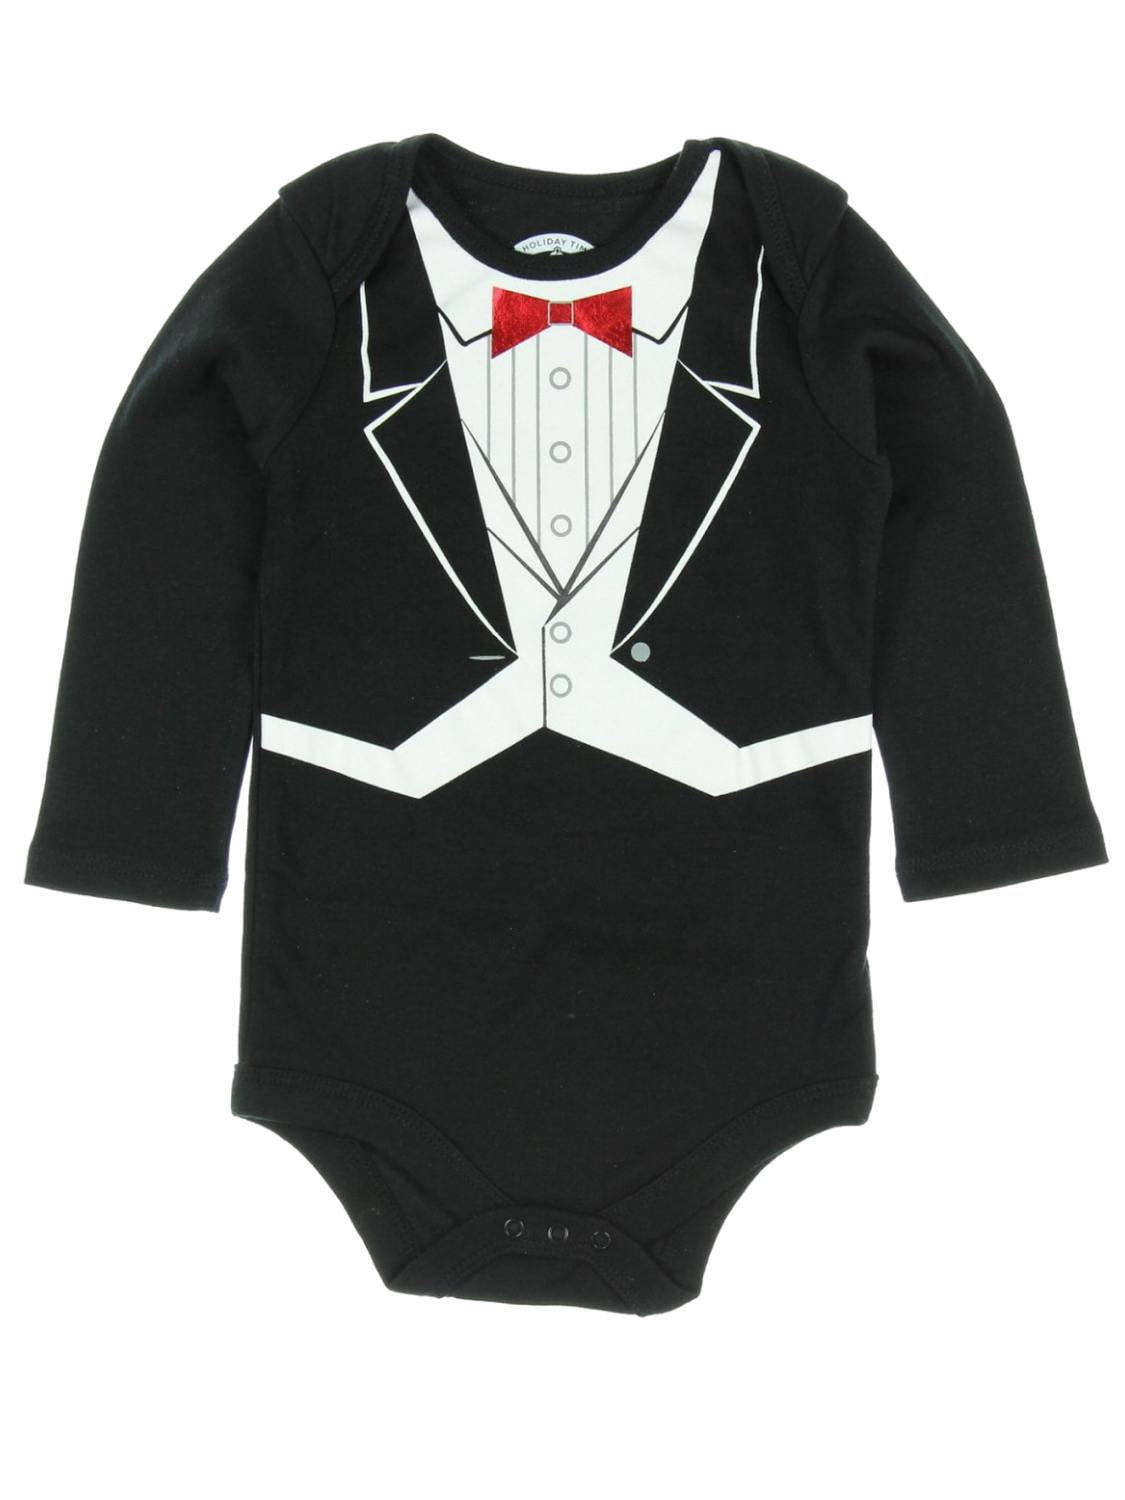 Holiday Time - Holiday Time Infant Boys Black Tuxedo Holiday Bodysuit ...